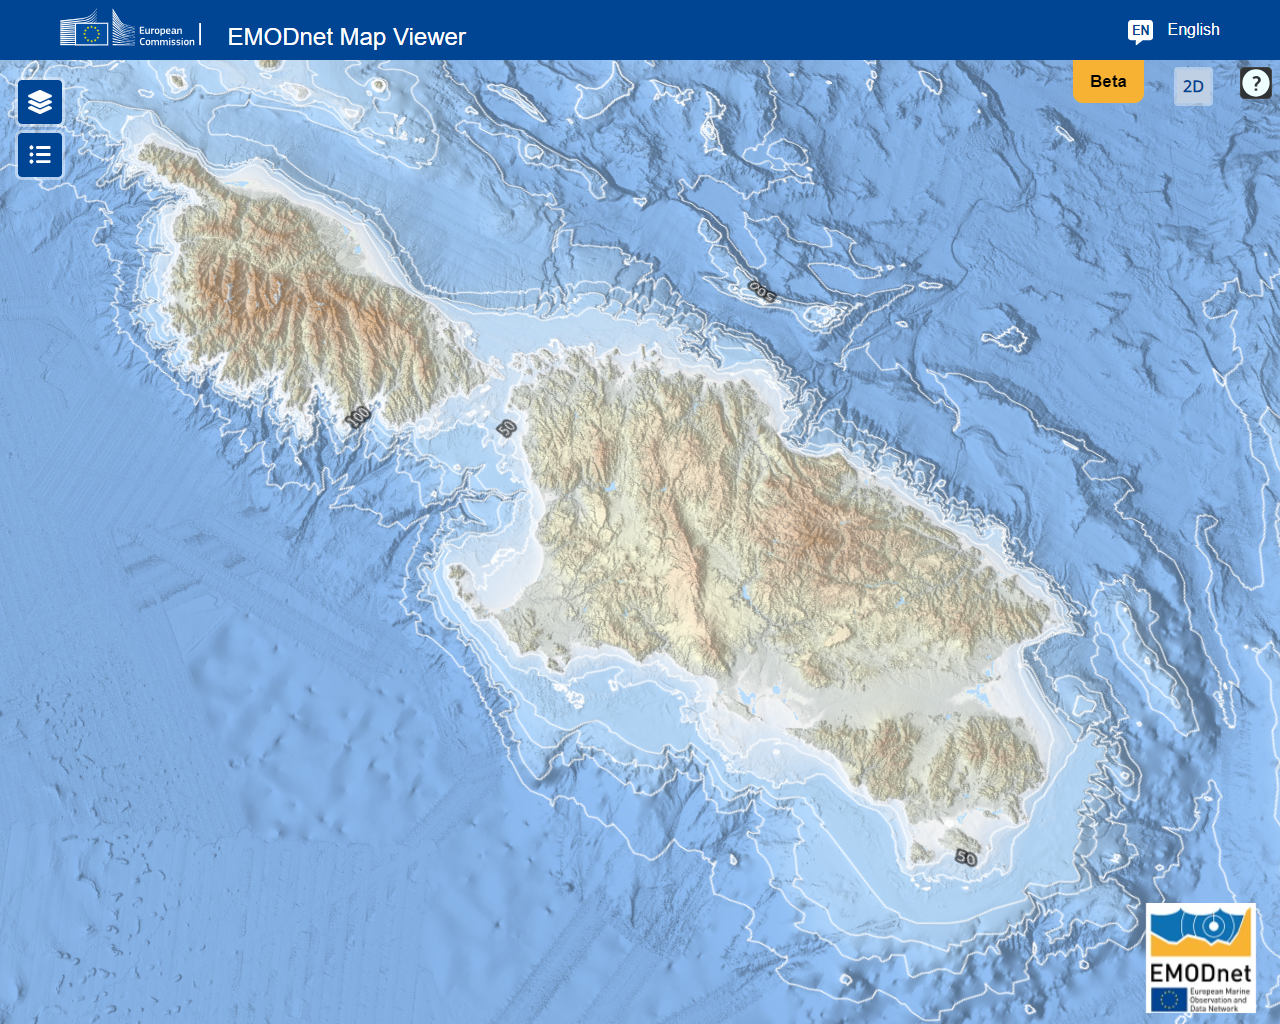 3D bathymetry של האוקיינוס ​​האטלנטי המזוליתי הידוע כיום בשם הים התיכון 2